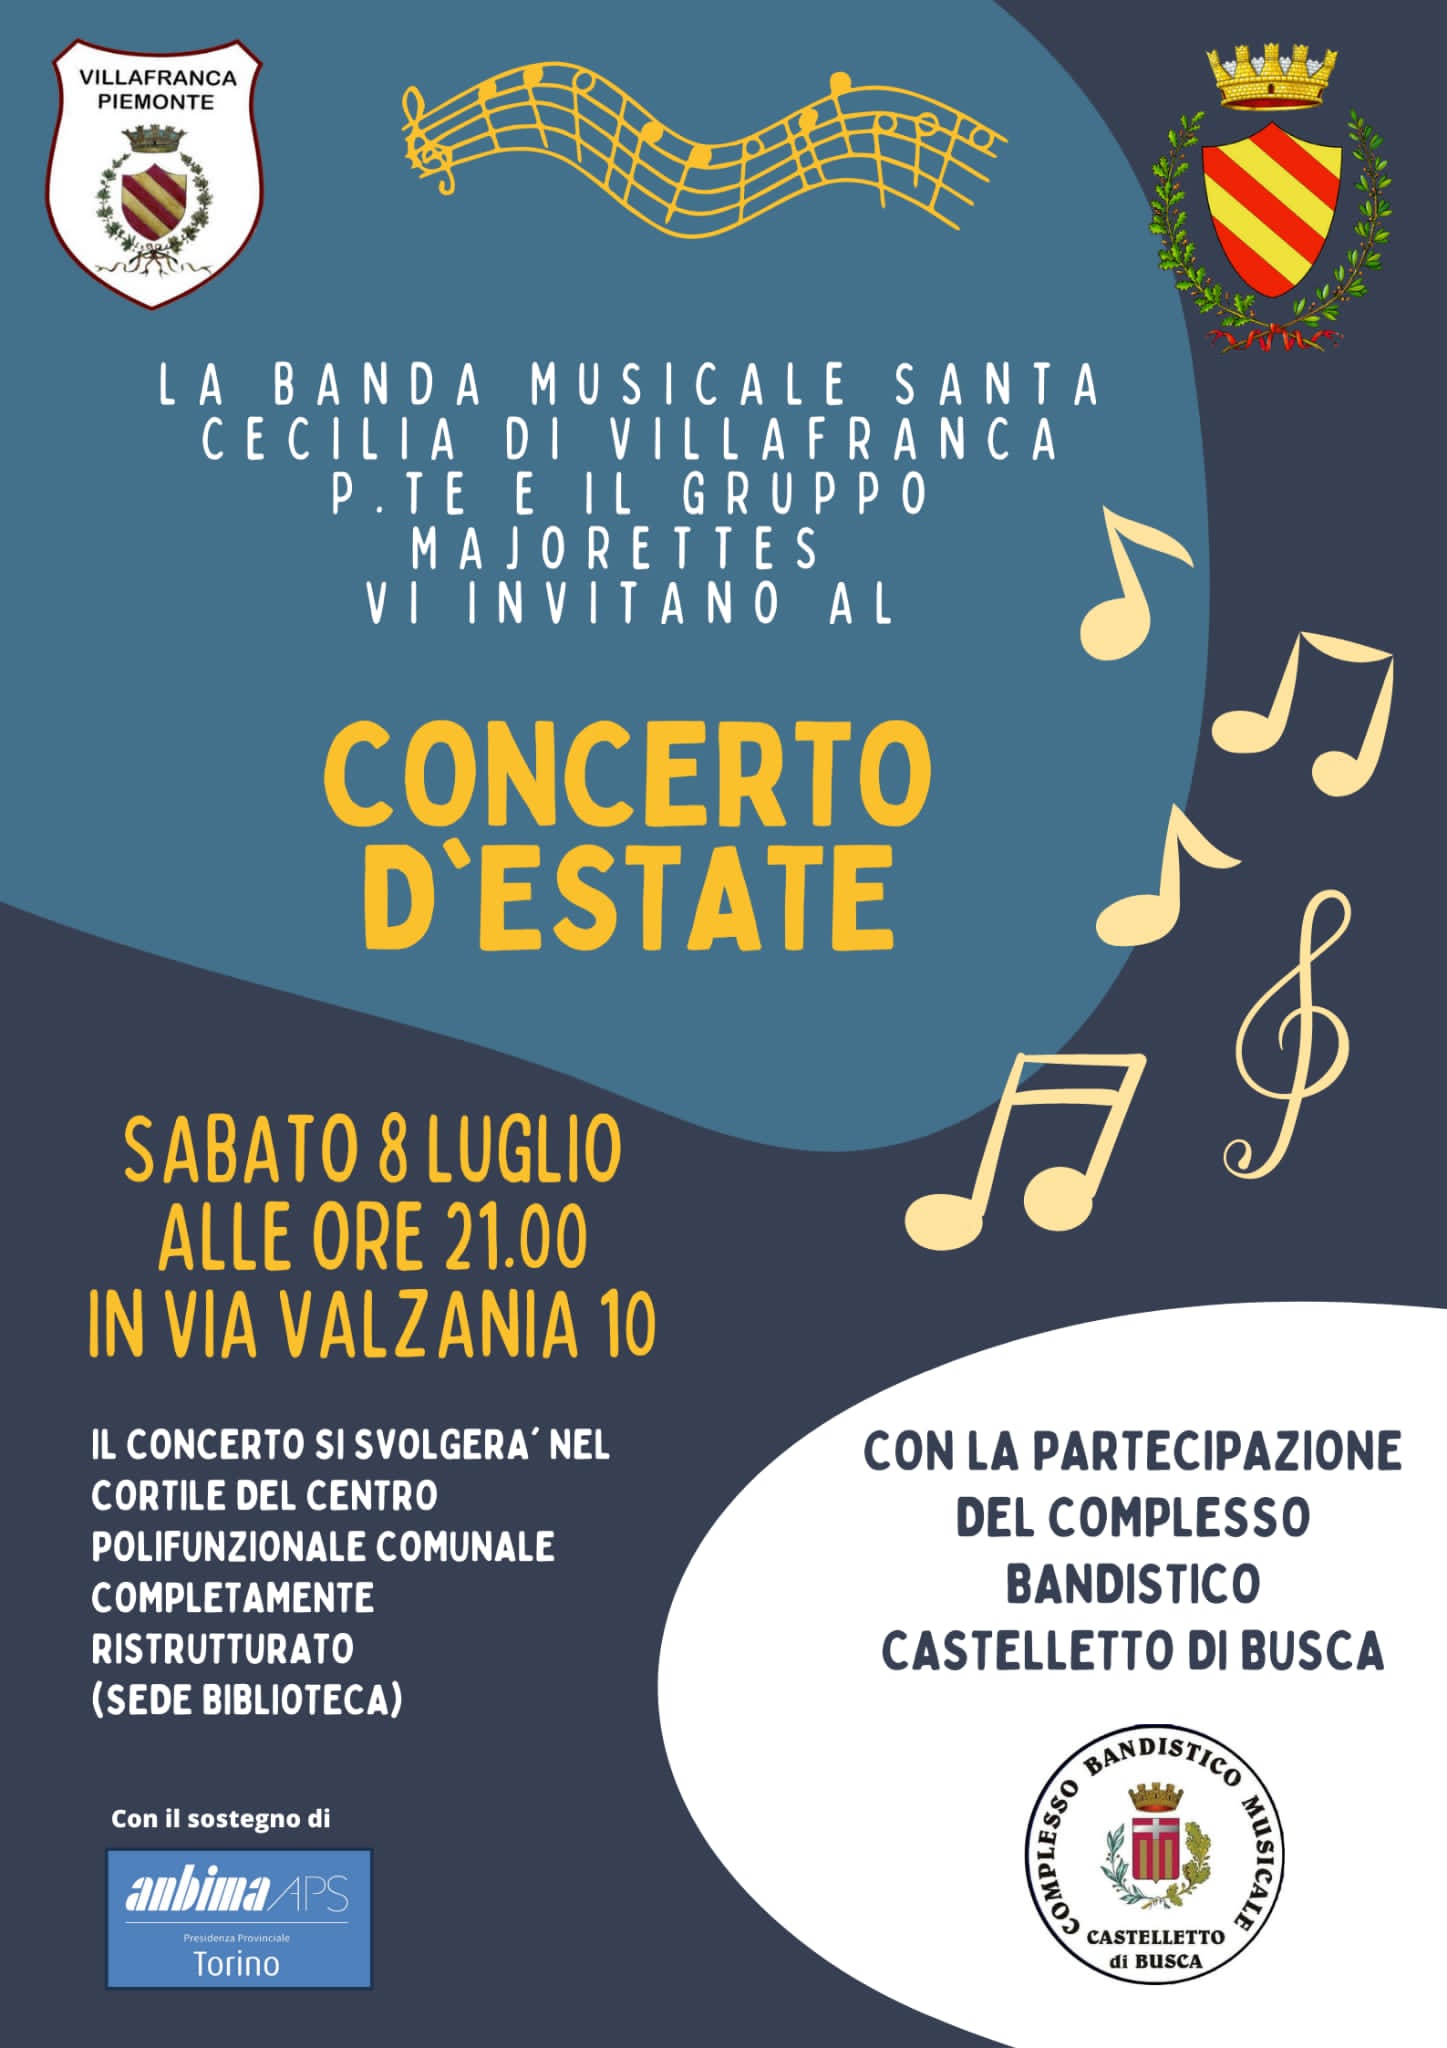 Concerto d'estate @ Villafranca Piemonte